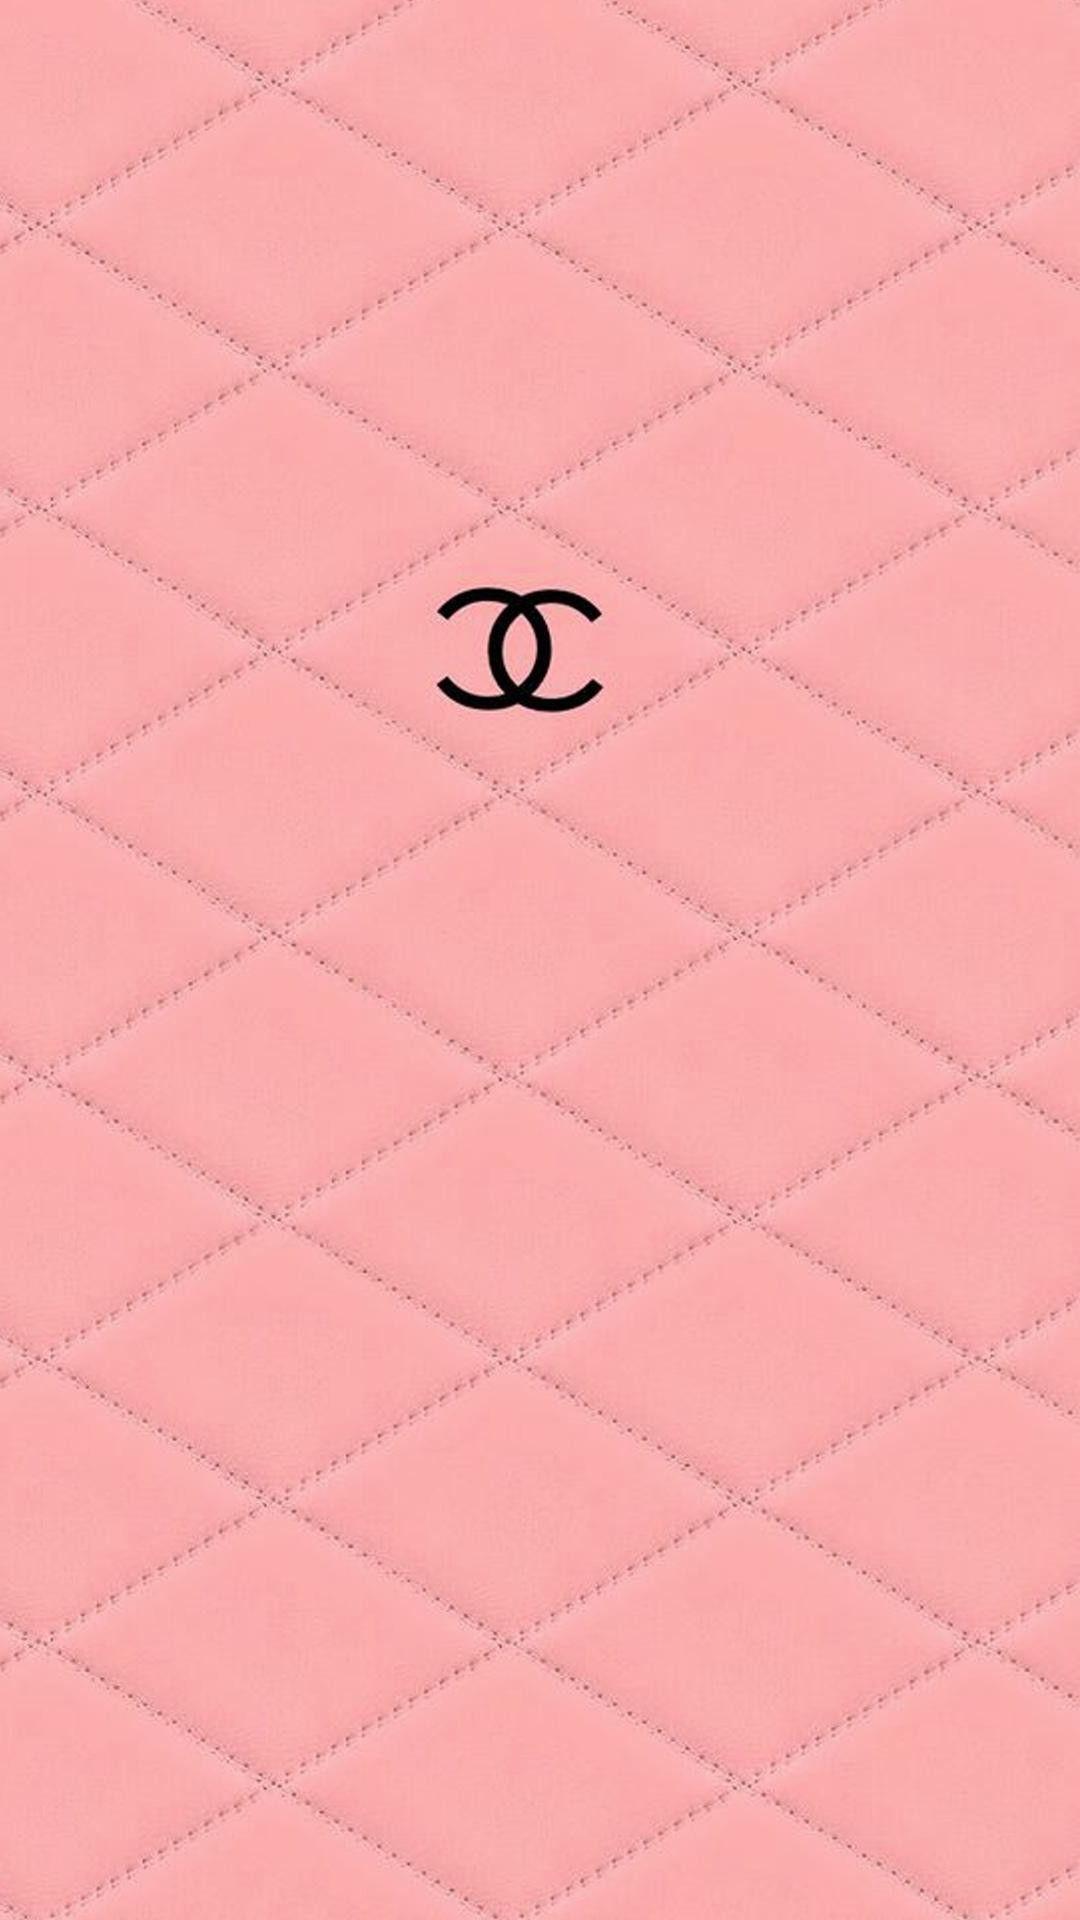 Nhắc đến Chanel đồng nghĩa với vẻ đẹp tinh tế và quyến rũ. Hình nền Chanel màu hồng càng khiến cho bức hình trở nên lãng mạn và đầy sức sống. Hãy cùng tiếp tục hành trình khám phá sự kết hợp này trong bức hình độc đáo này.